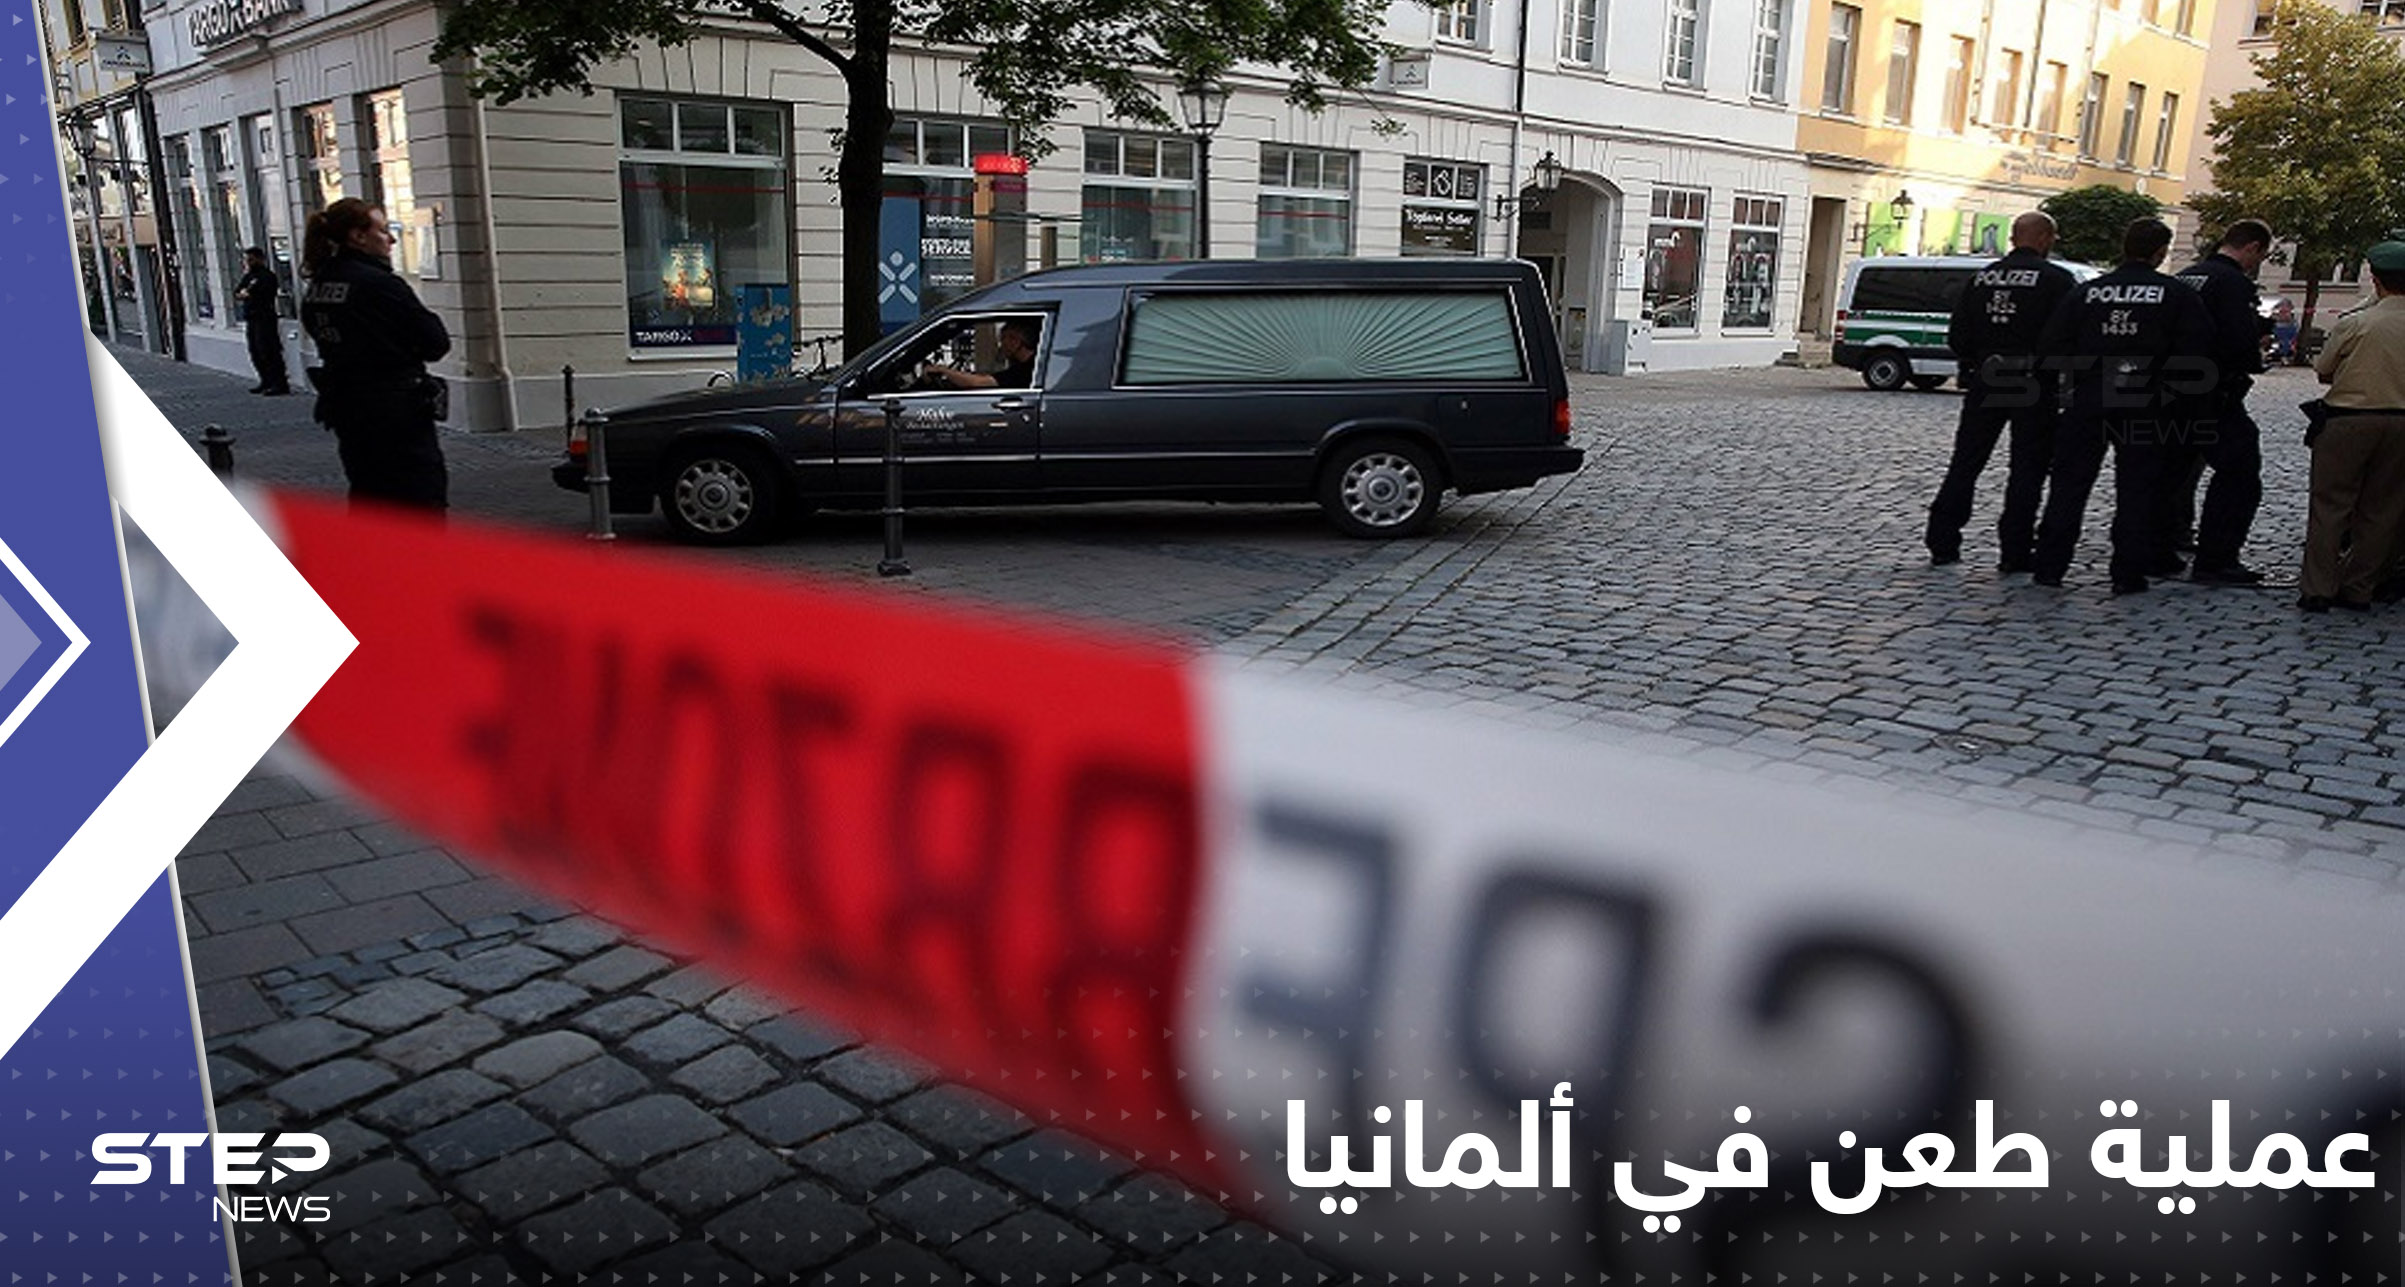 ألمانيا.. شاب يطعن شخصين والشرطة تعلن مصير منفذ العملية